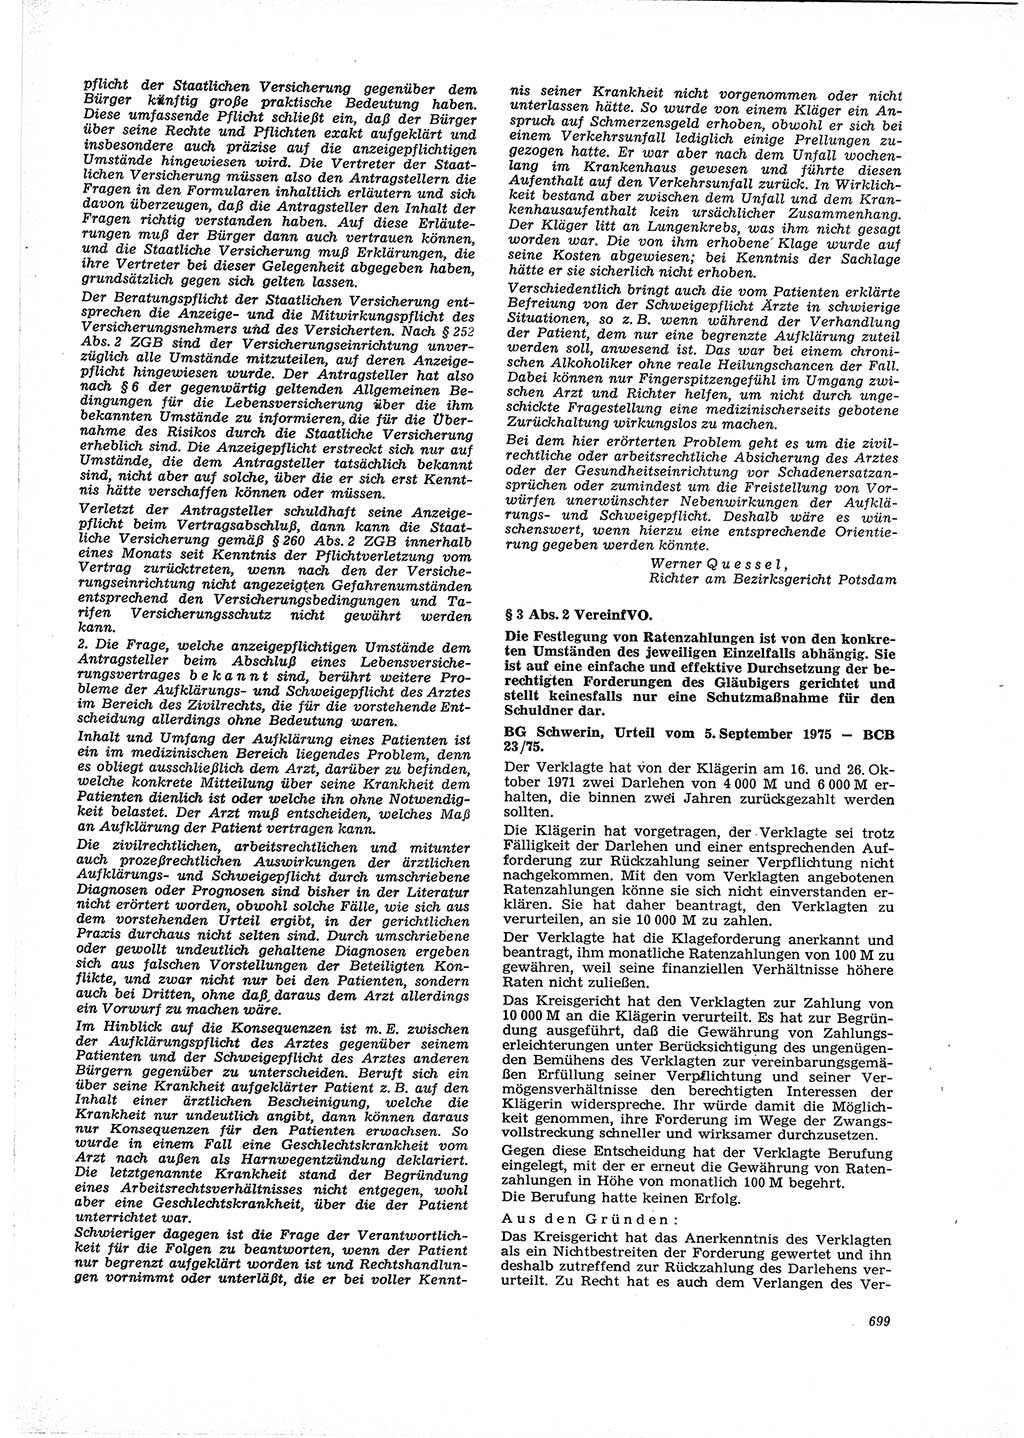 Neue Justiz (NJ), Zeitschrift für Recht und Rechtswissenschaft [Deutsche Demokratische Republik (DDR)], 29. Jahrgang 1975, Seite 699 (NJ DDR 1975, S. 699)